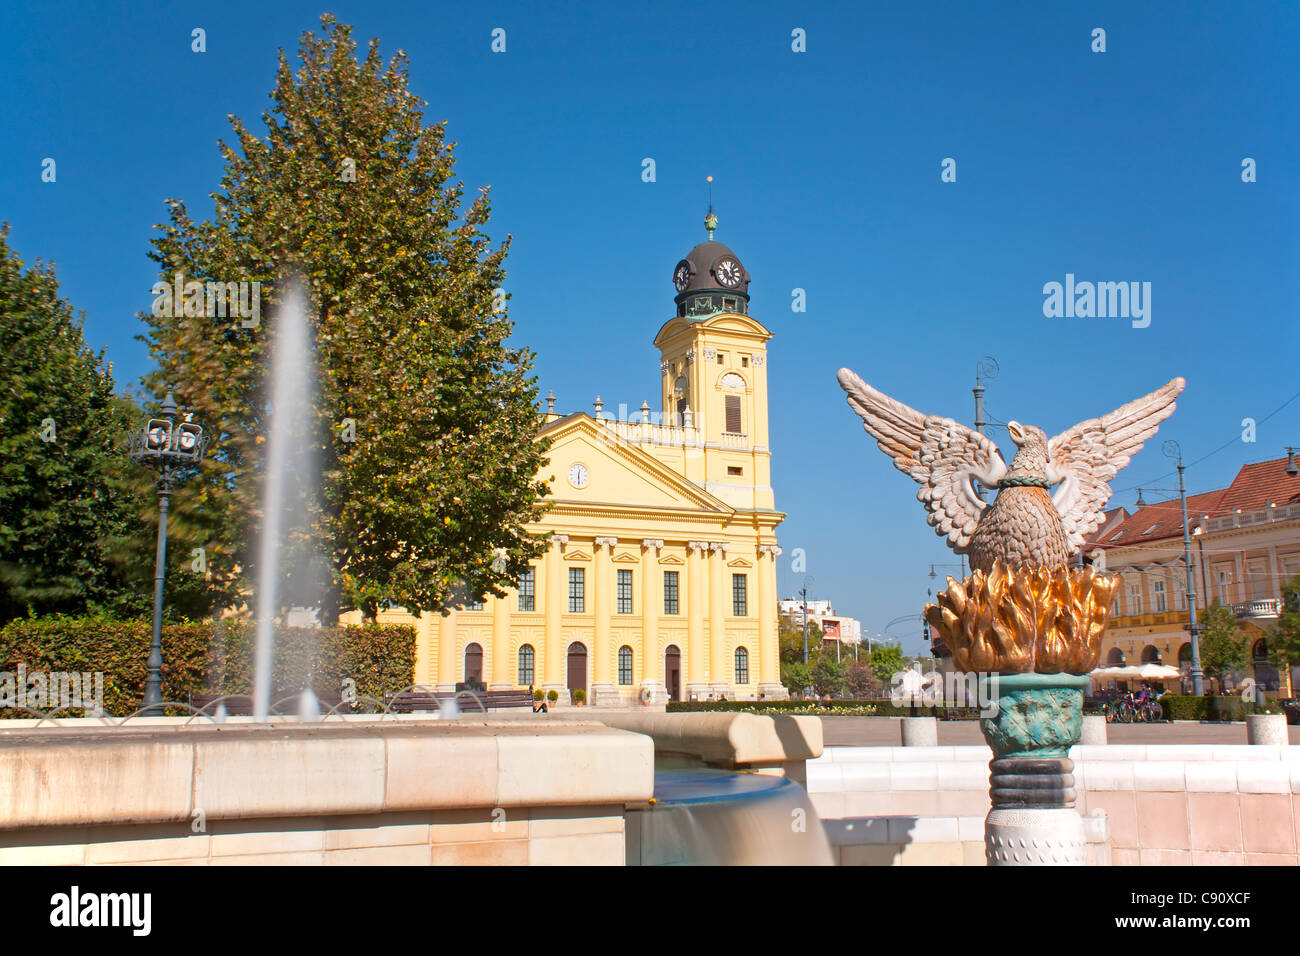 Phoenix-Statue auf dem Hauptplatz von Debrecen Ungarn zum Gedenken an die Re Geburt der Stadt Stockfoto